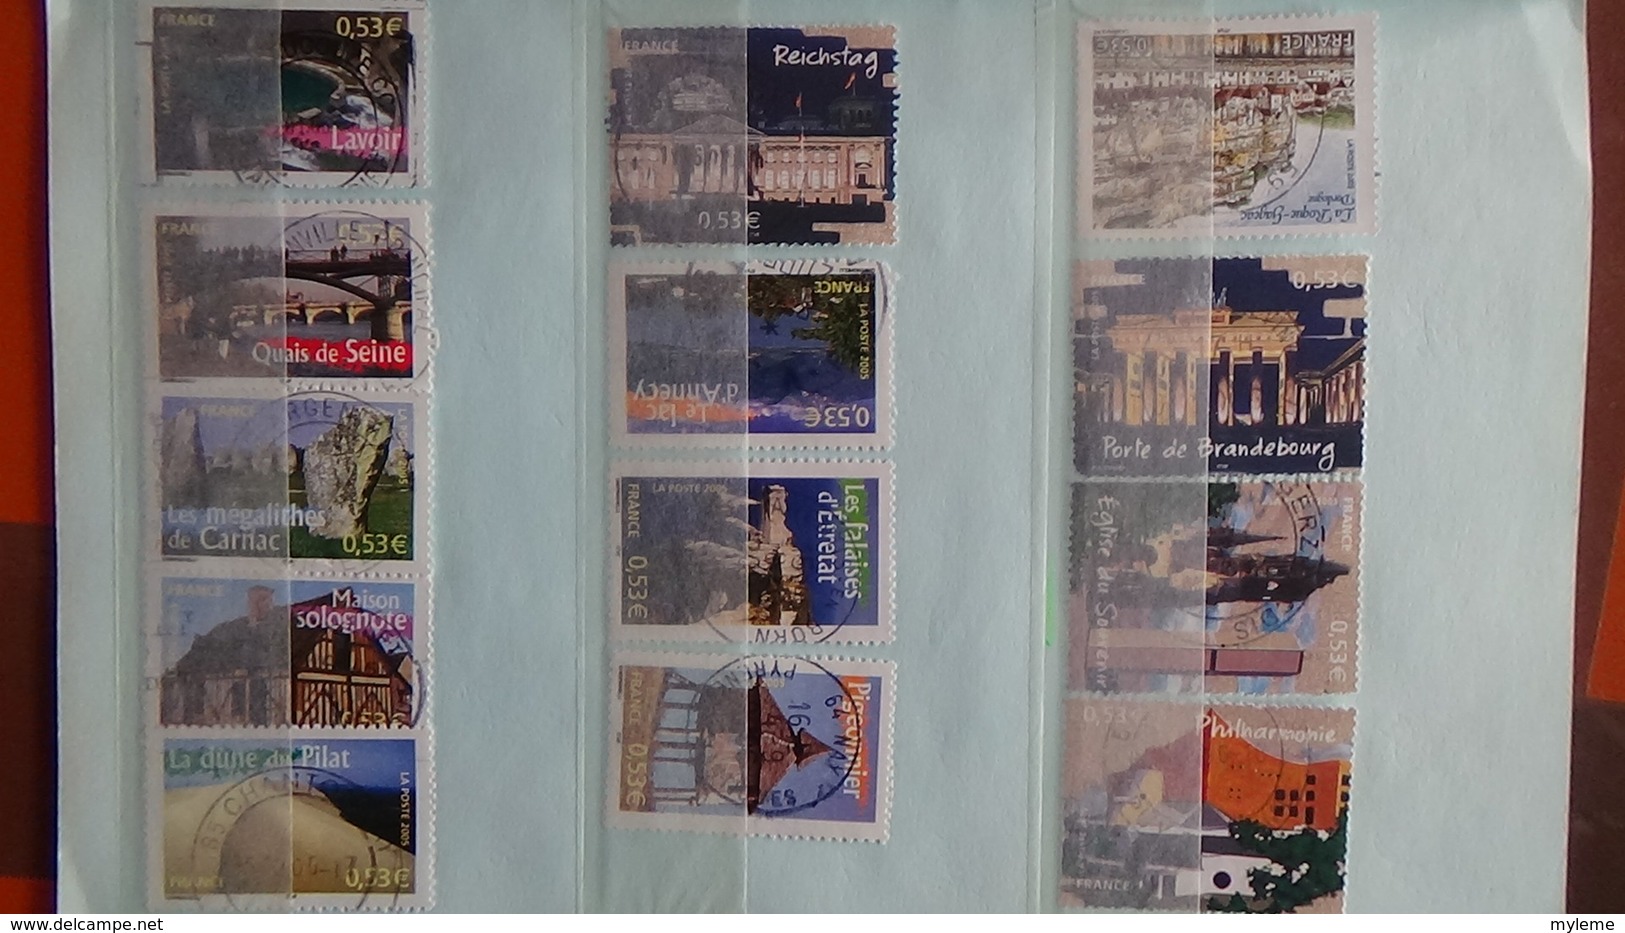 B366 Bon lot de timbres de France avec oblitérations rondes. Très sympa !!!